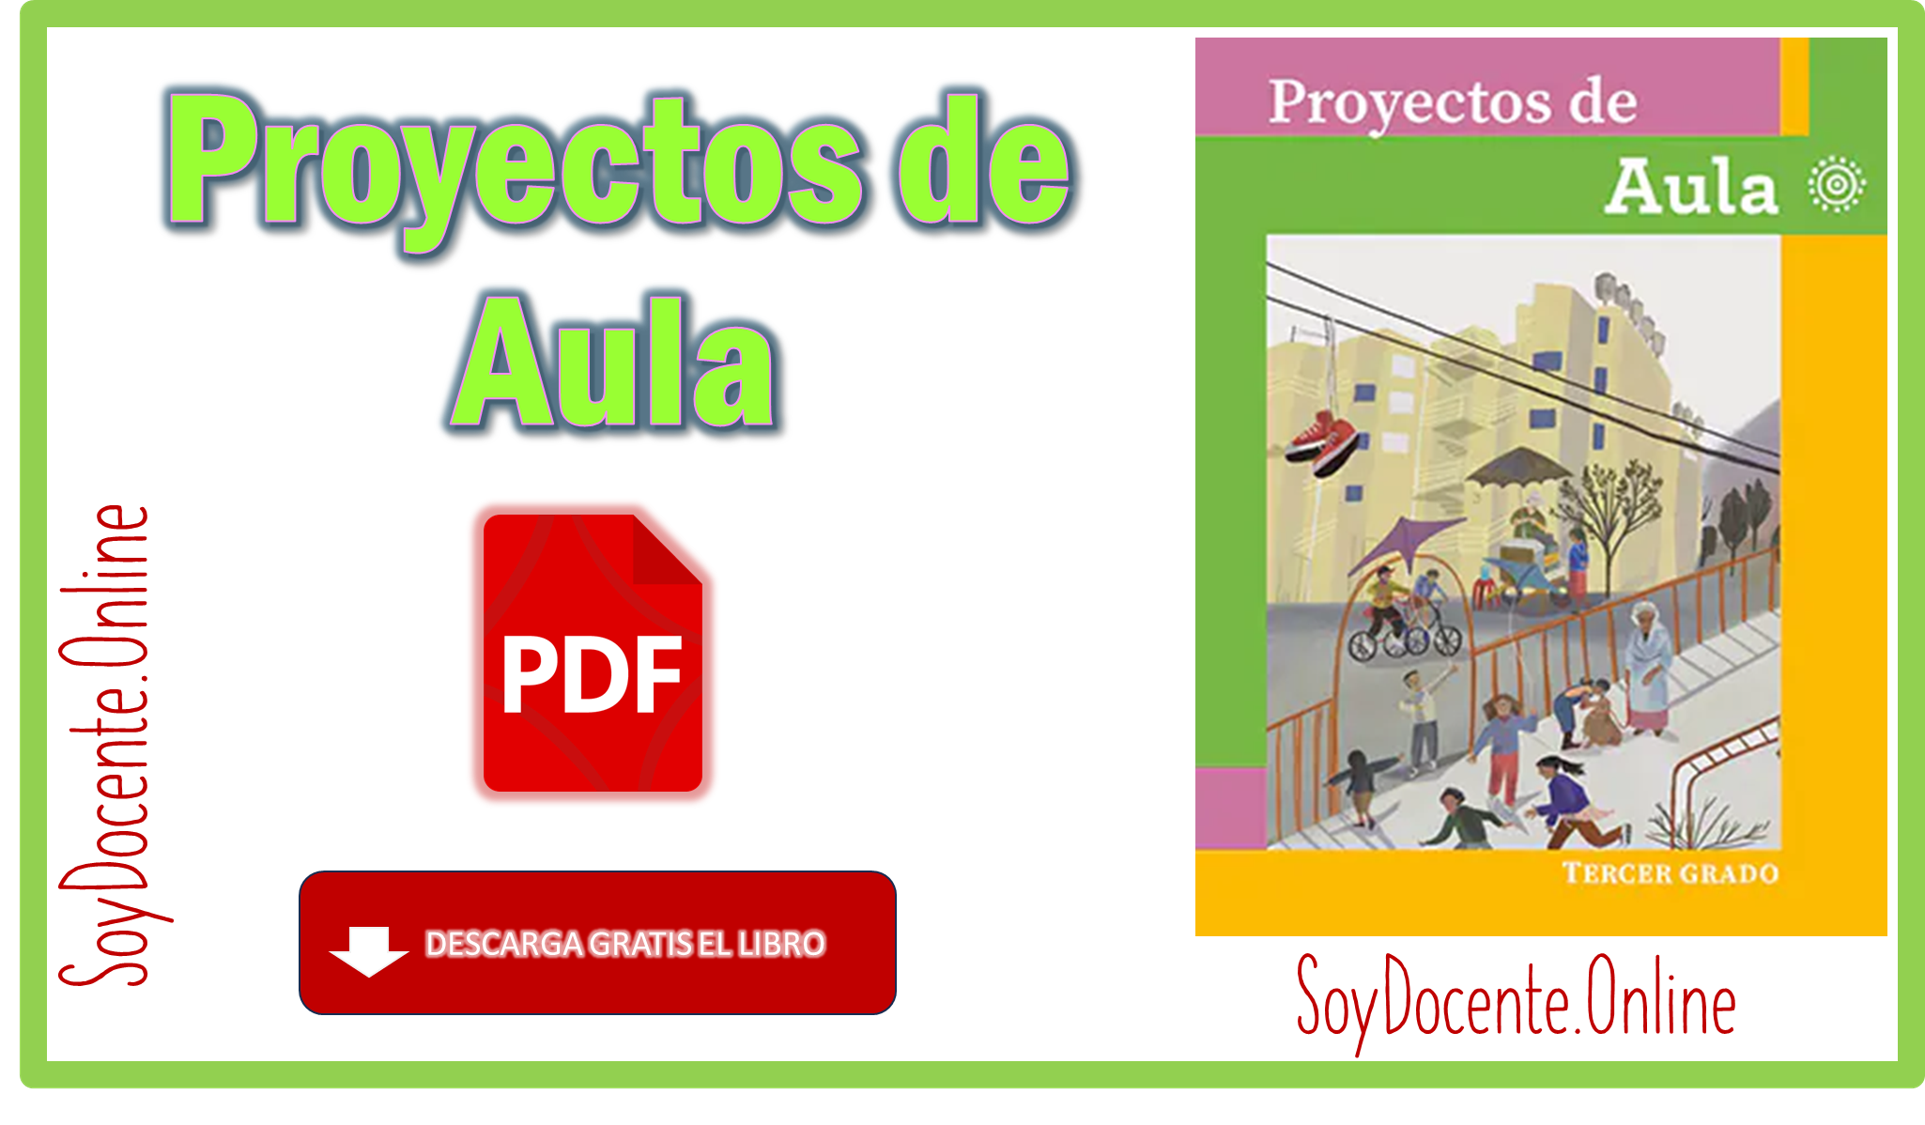 Ya puedes descargar en PDF el Libro de Proyectos de Aula tercer grado de Primaria obra de la SEP, distribuido por la CONLAITEG, GRATIS.